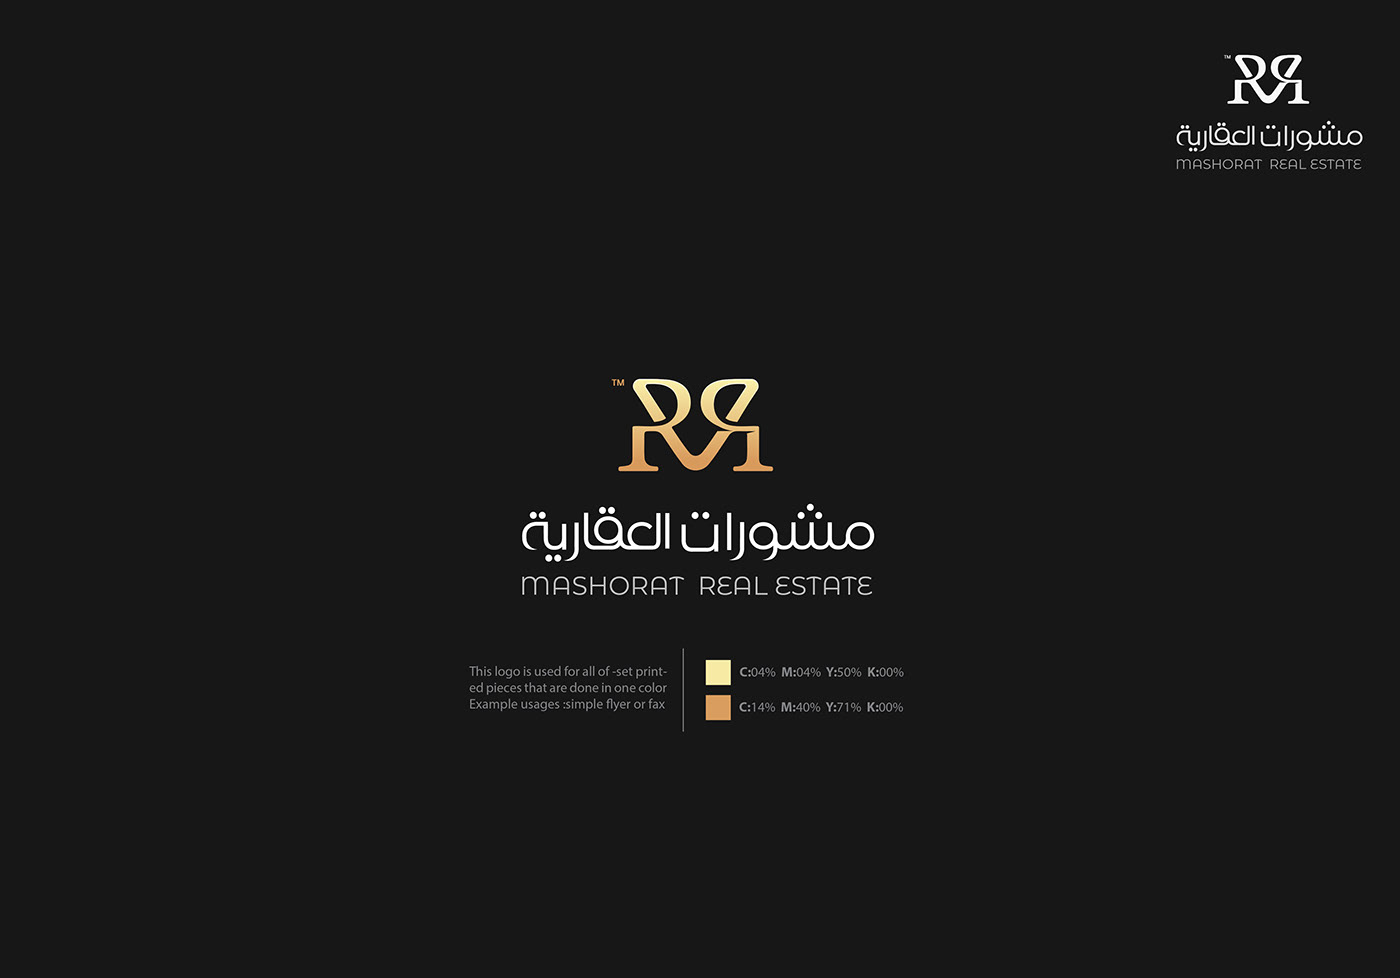 埃及设计师serag basel标志设计作品(二)